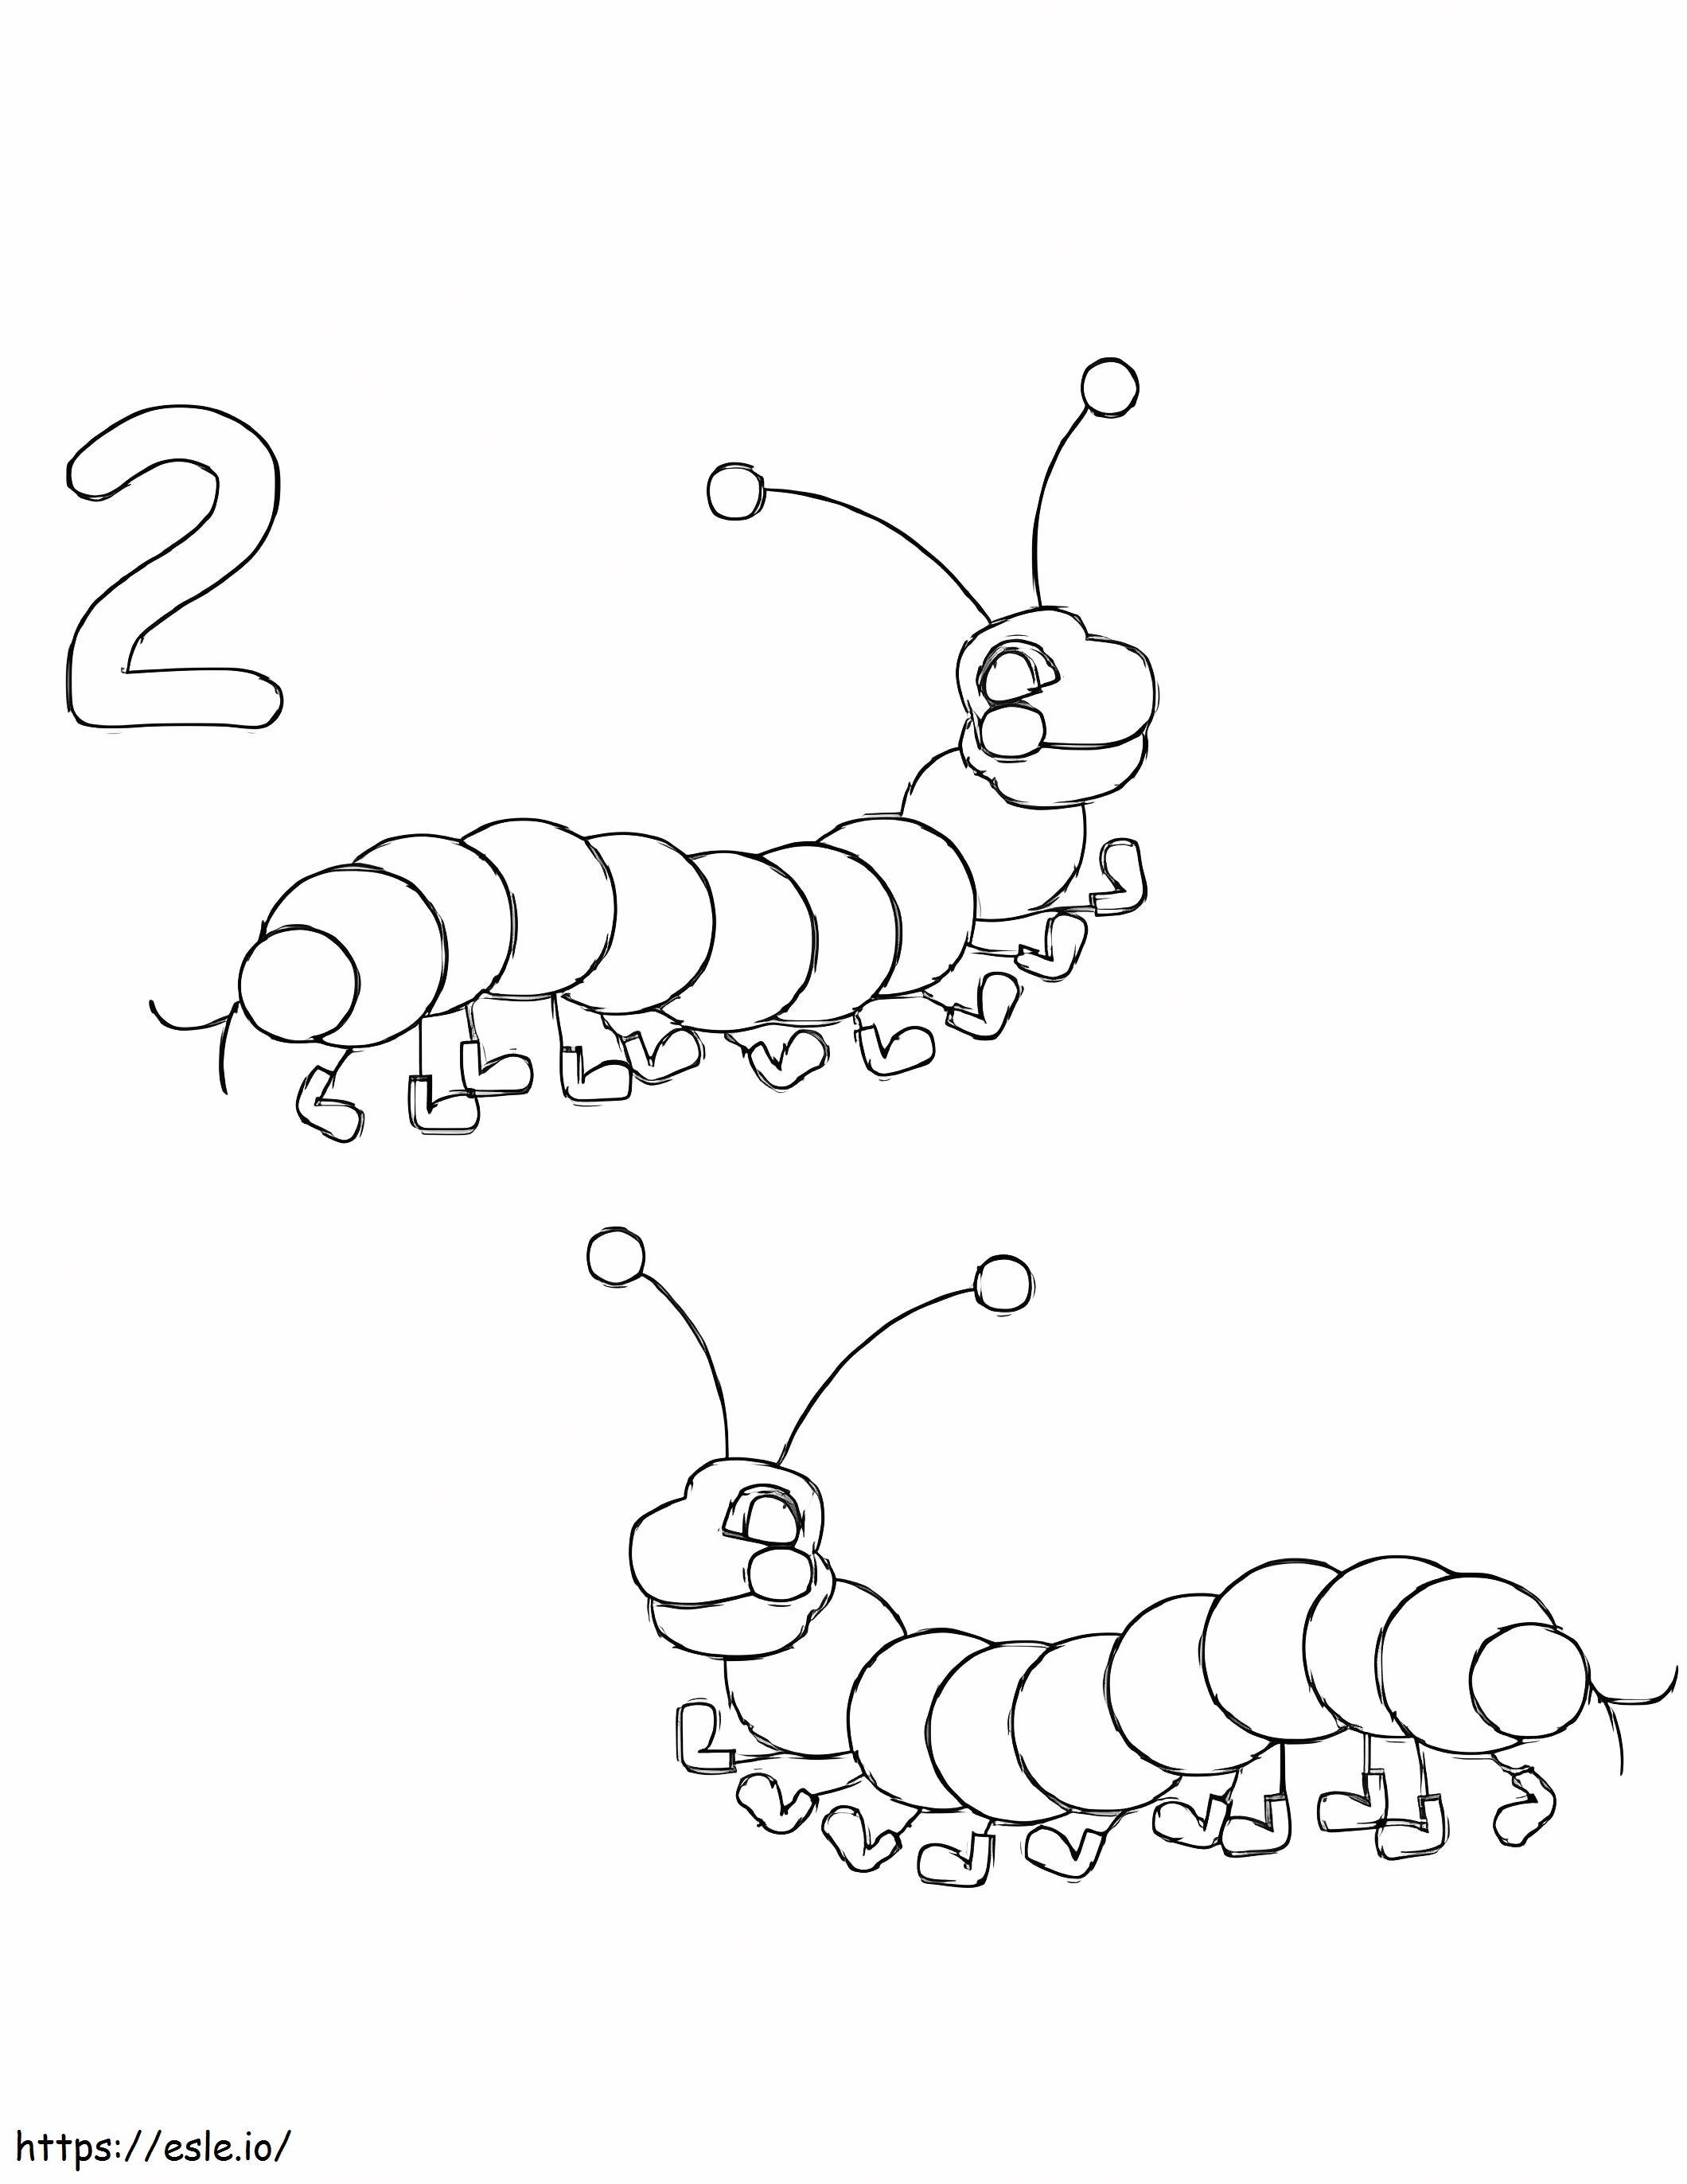 Nummer 2 und zwei Würmer ausmalbilder